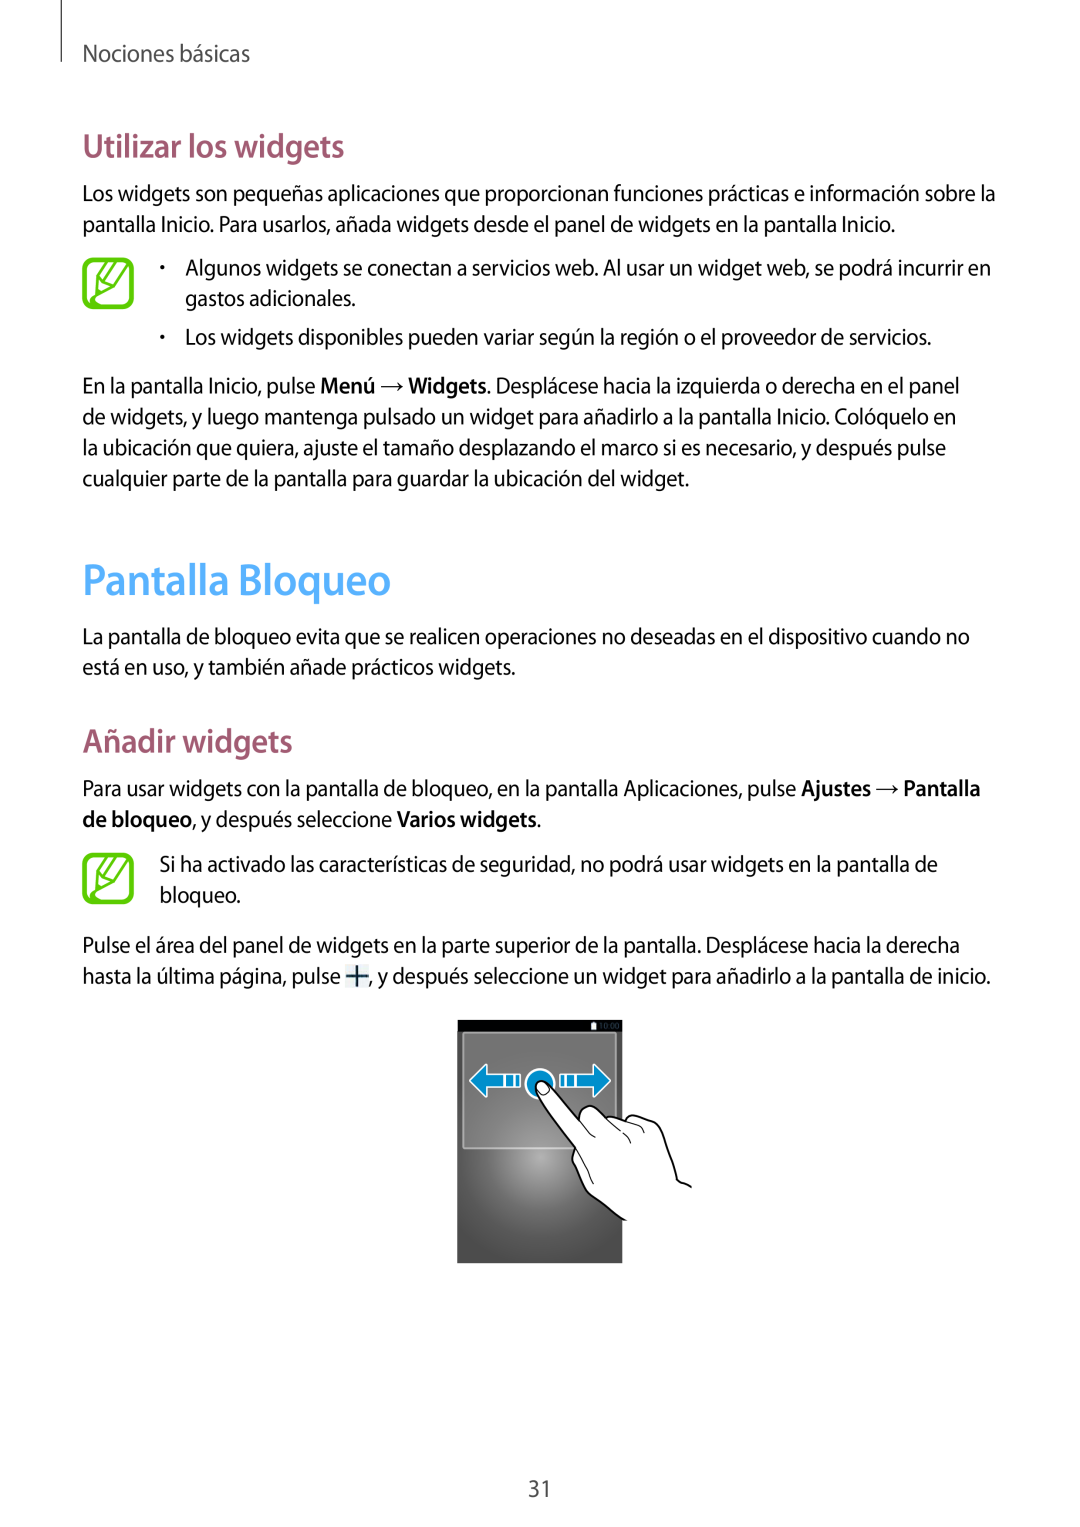 Samsung SM-T3150ZWAATL manual Pantalla Bloqueo, Utilizar los widgets, Añadir widgets, Nociones básicas 